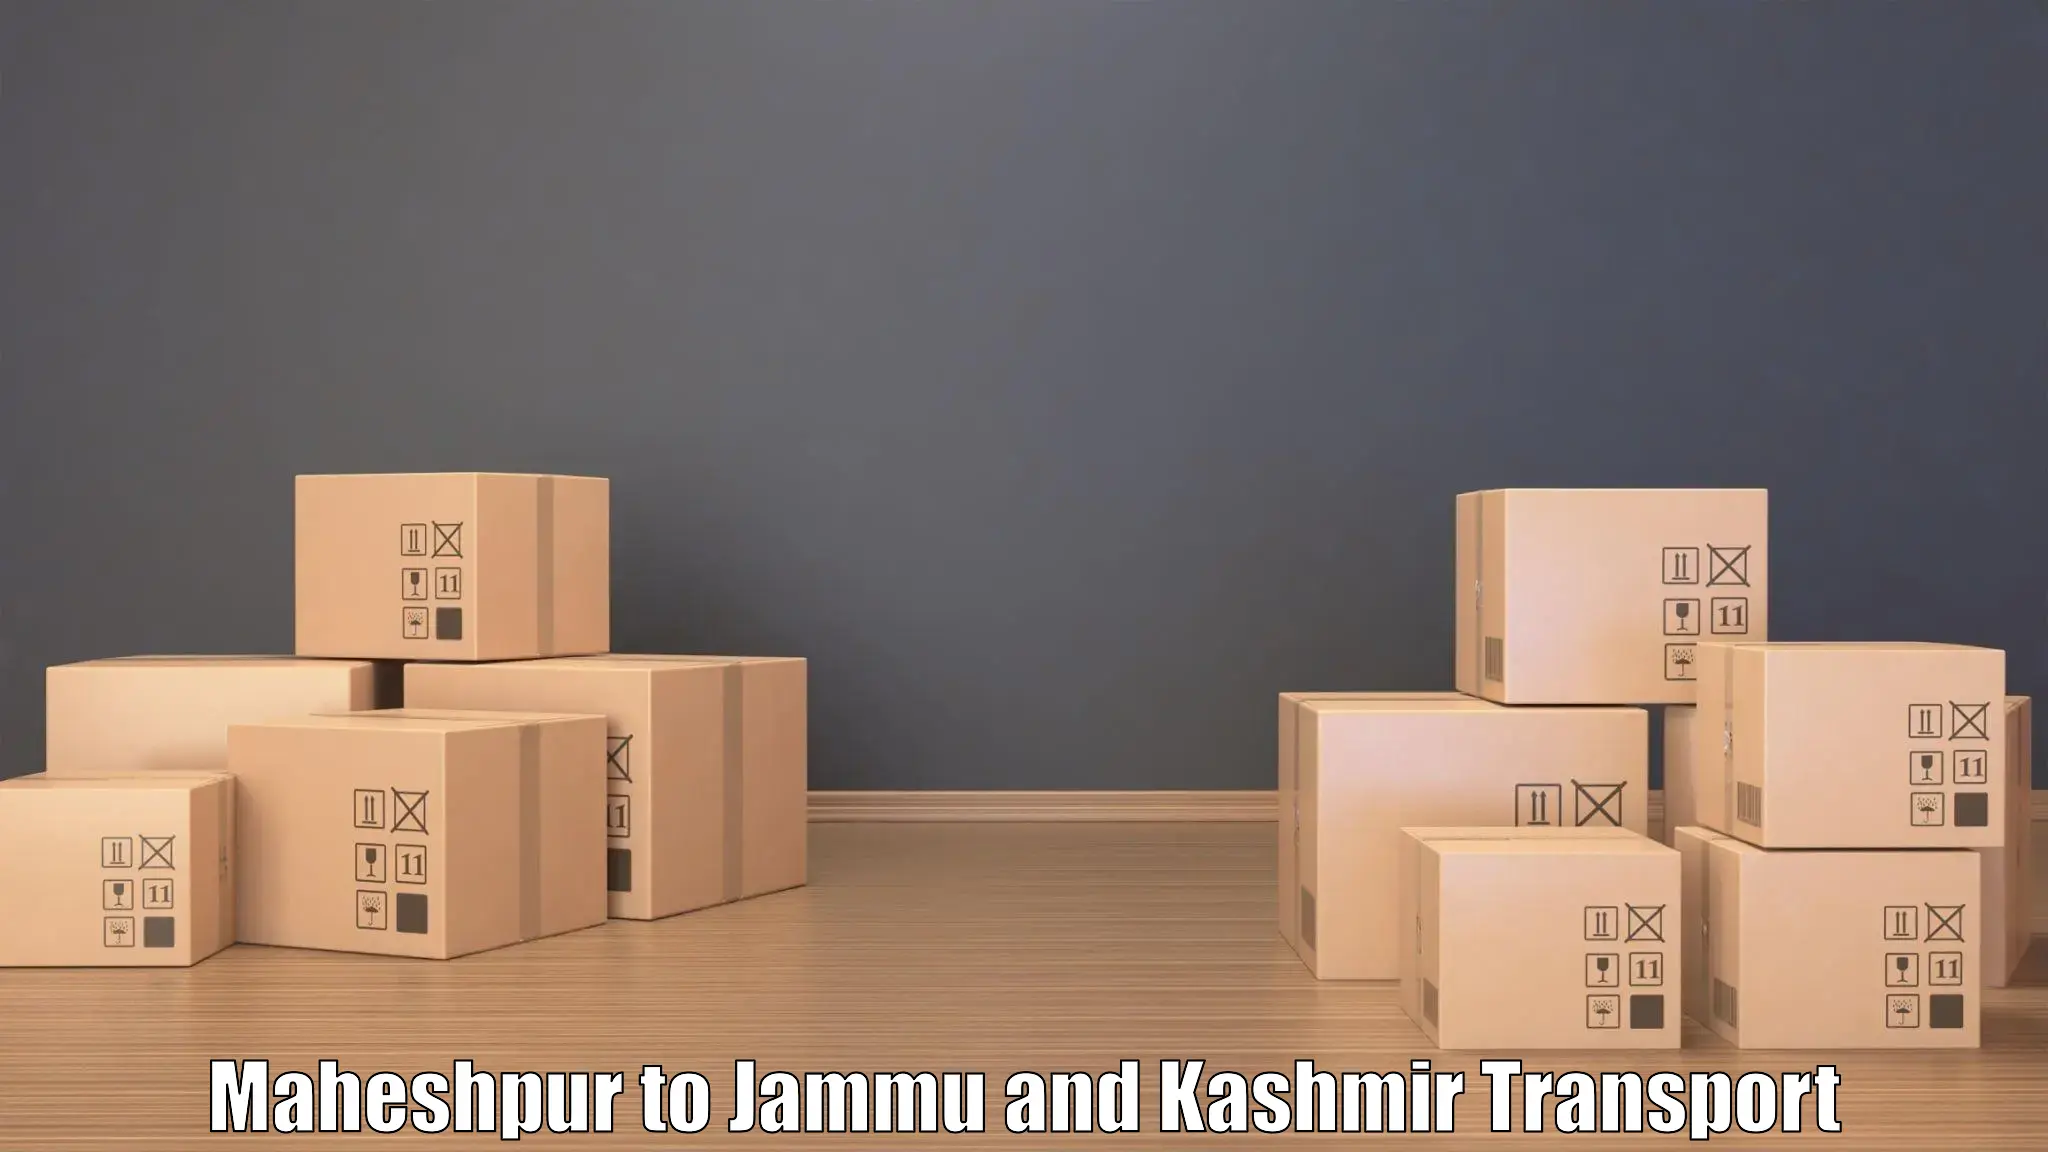 Truck transport companies in India Maheshpur to Bhaderwah